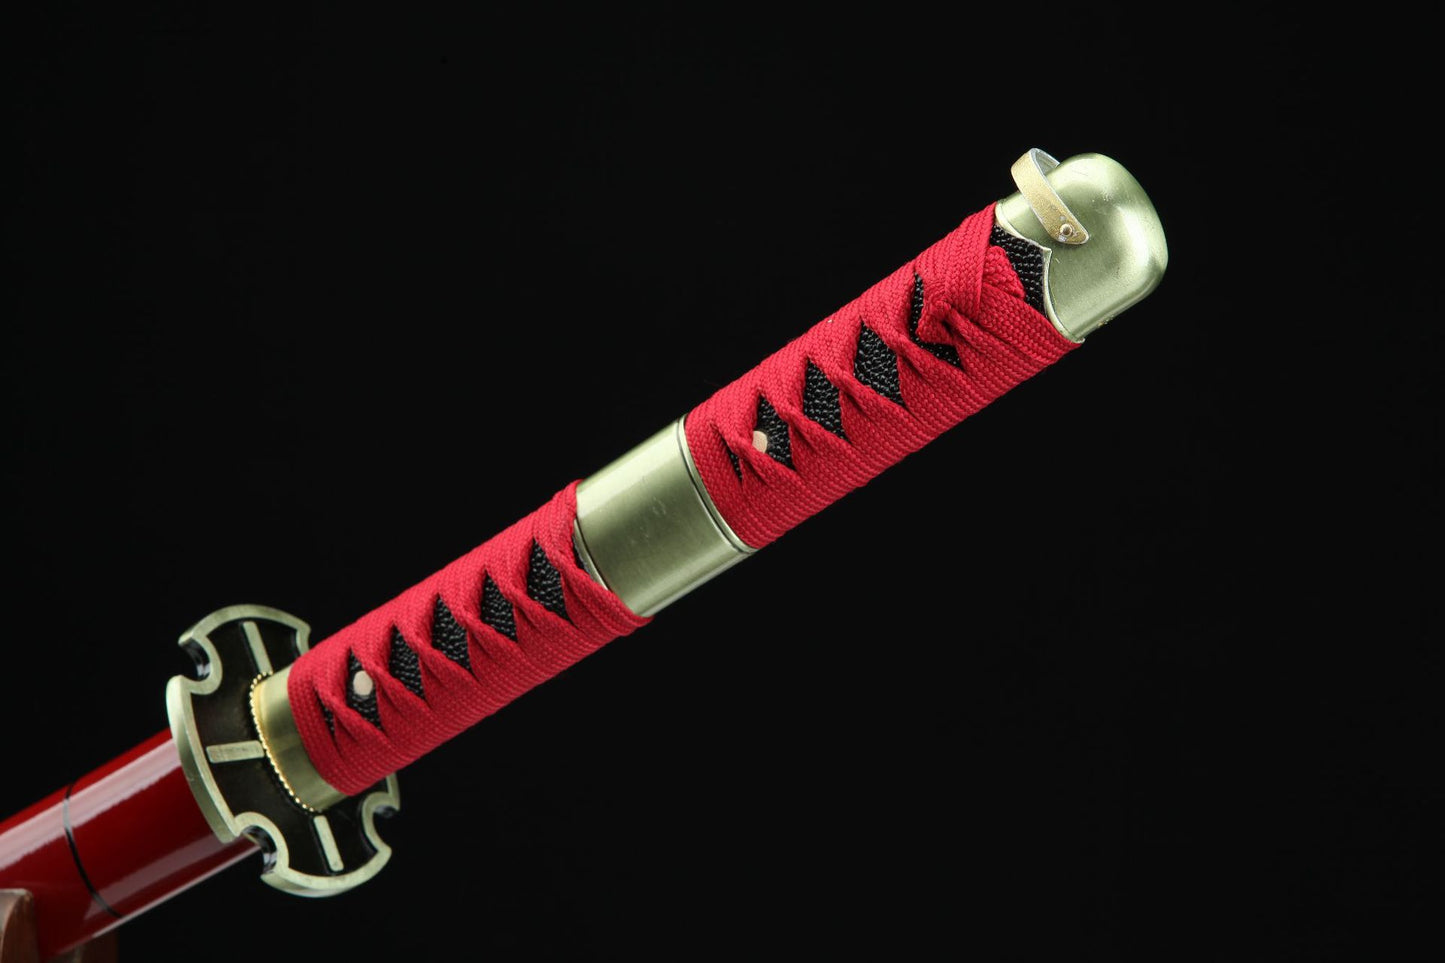 (No Sharp Blade) Zoro's Sabre Command Sword High Manganese Steel Japanese Red Samurai Katana